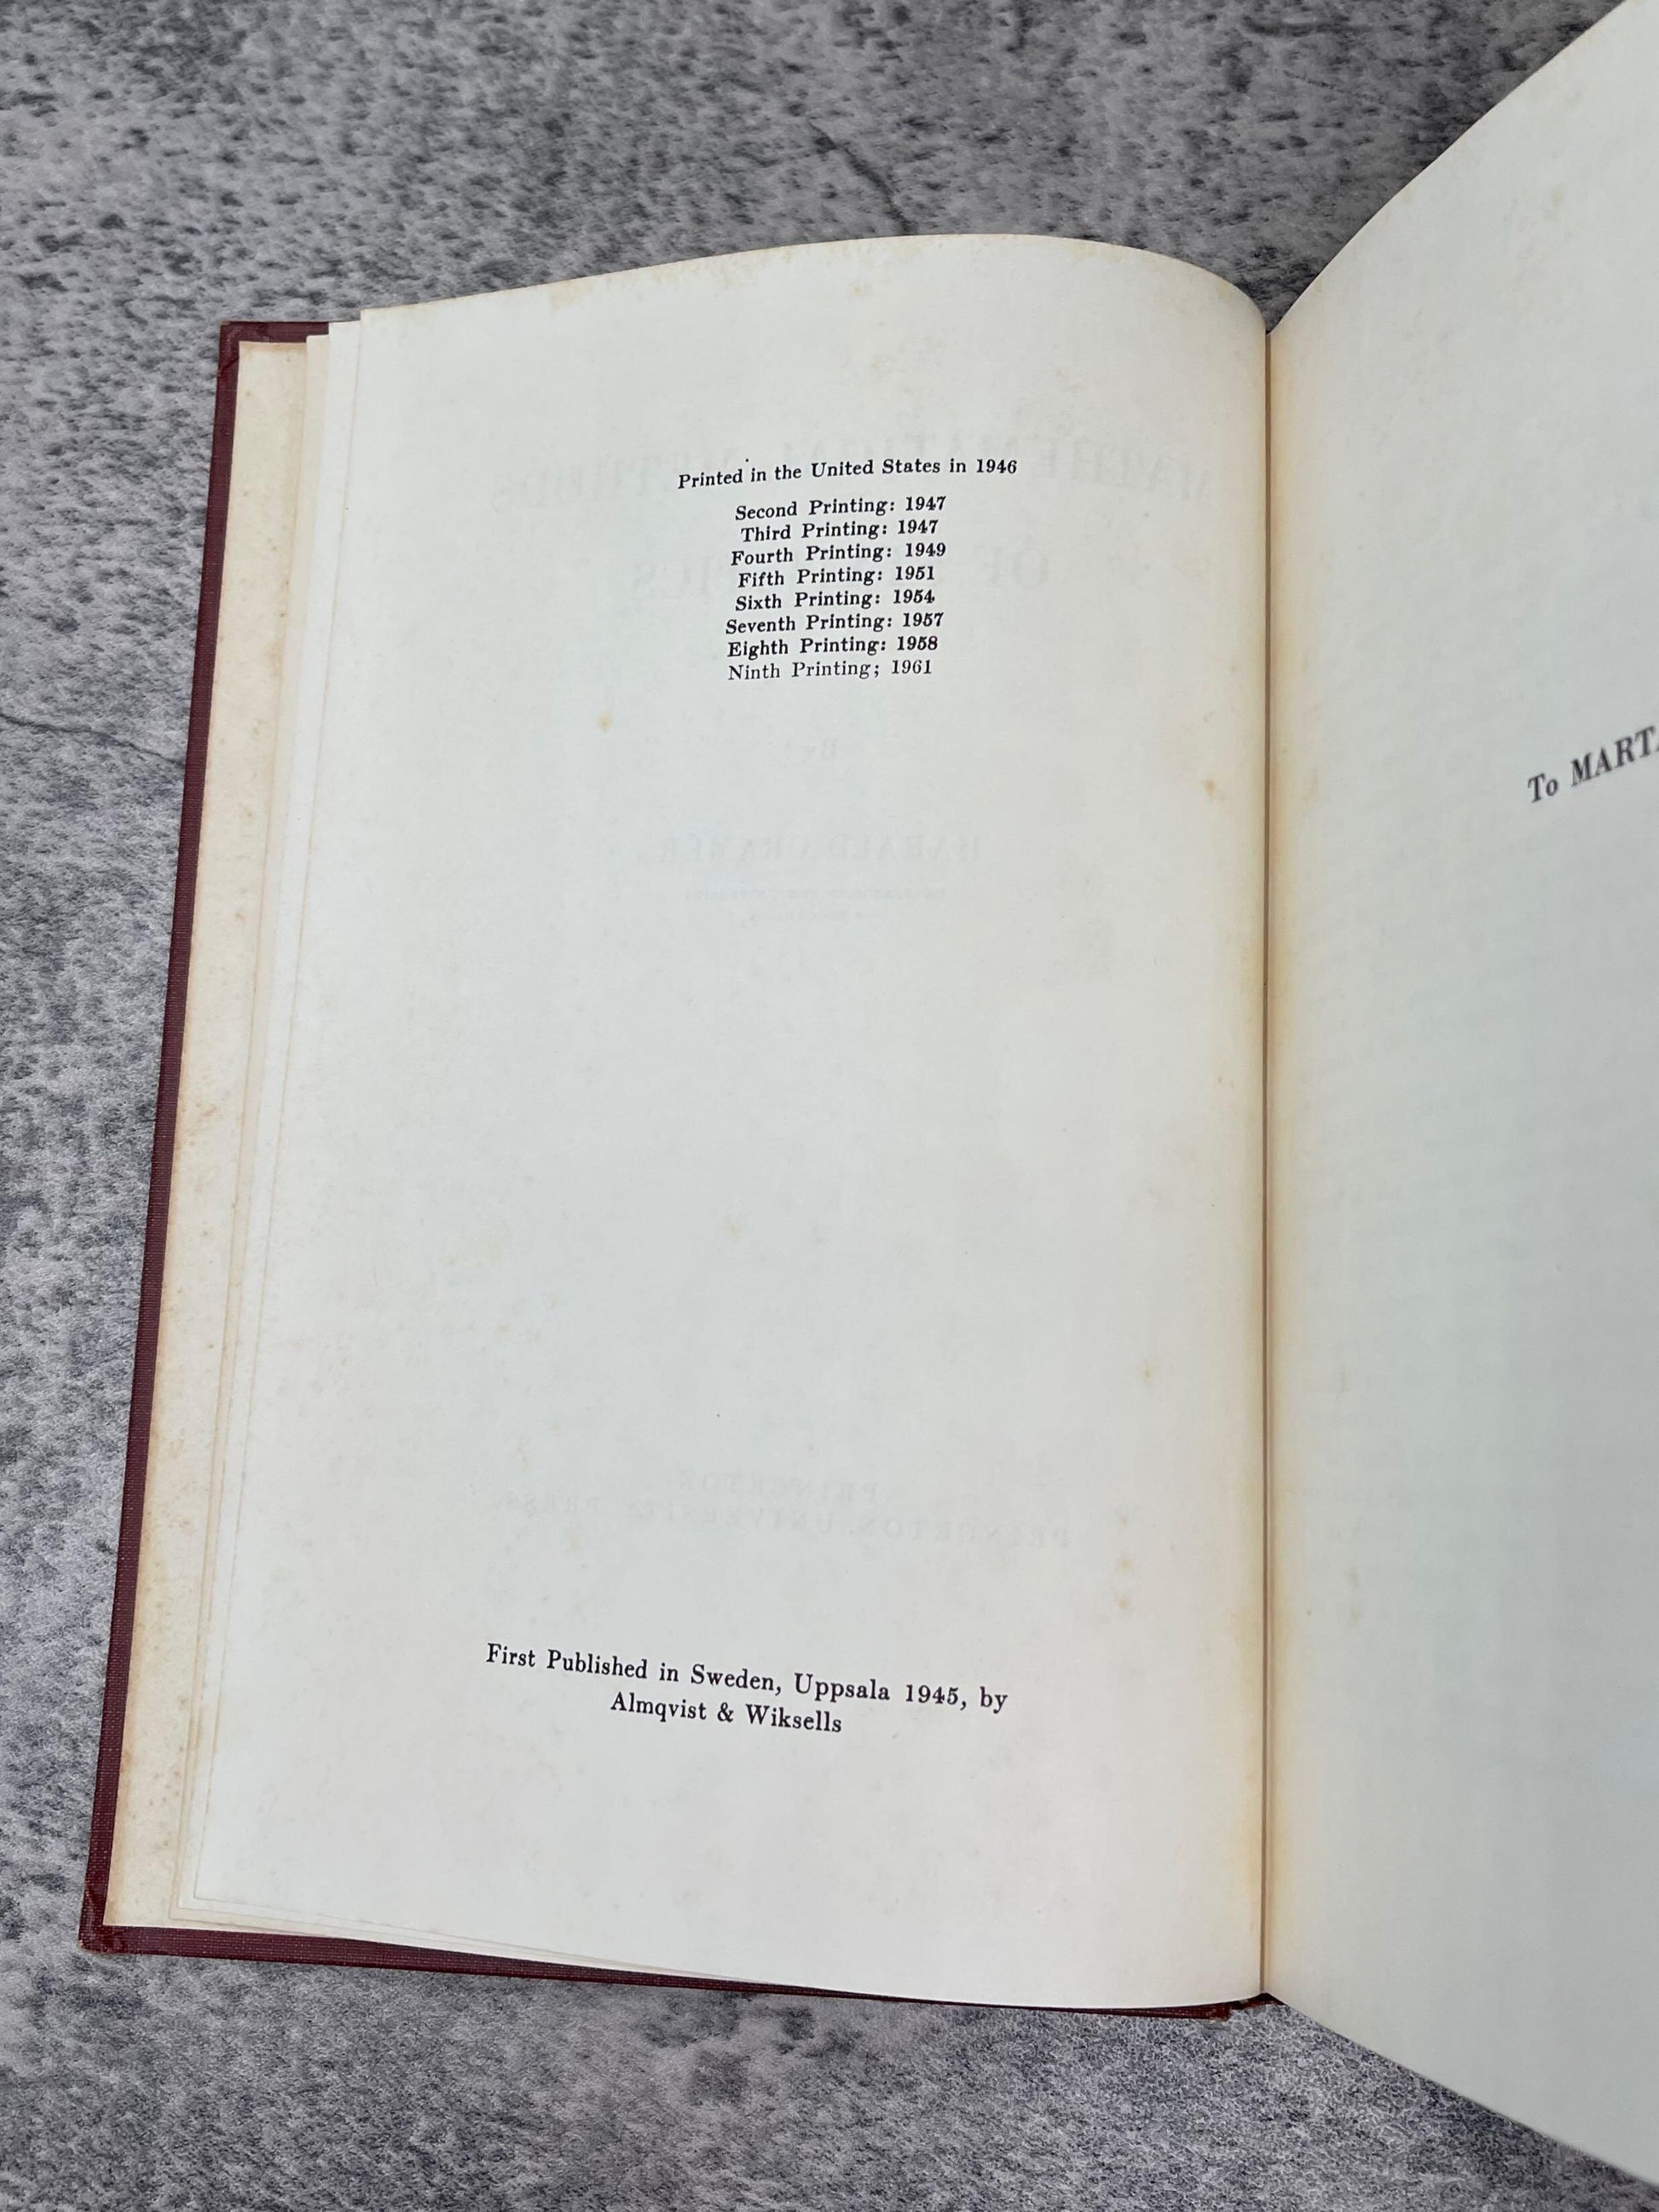 Mathematics Books / Lot of 2 / 1950-1961 - Precious Cache